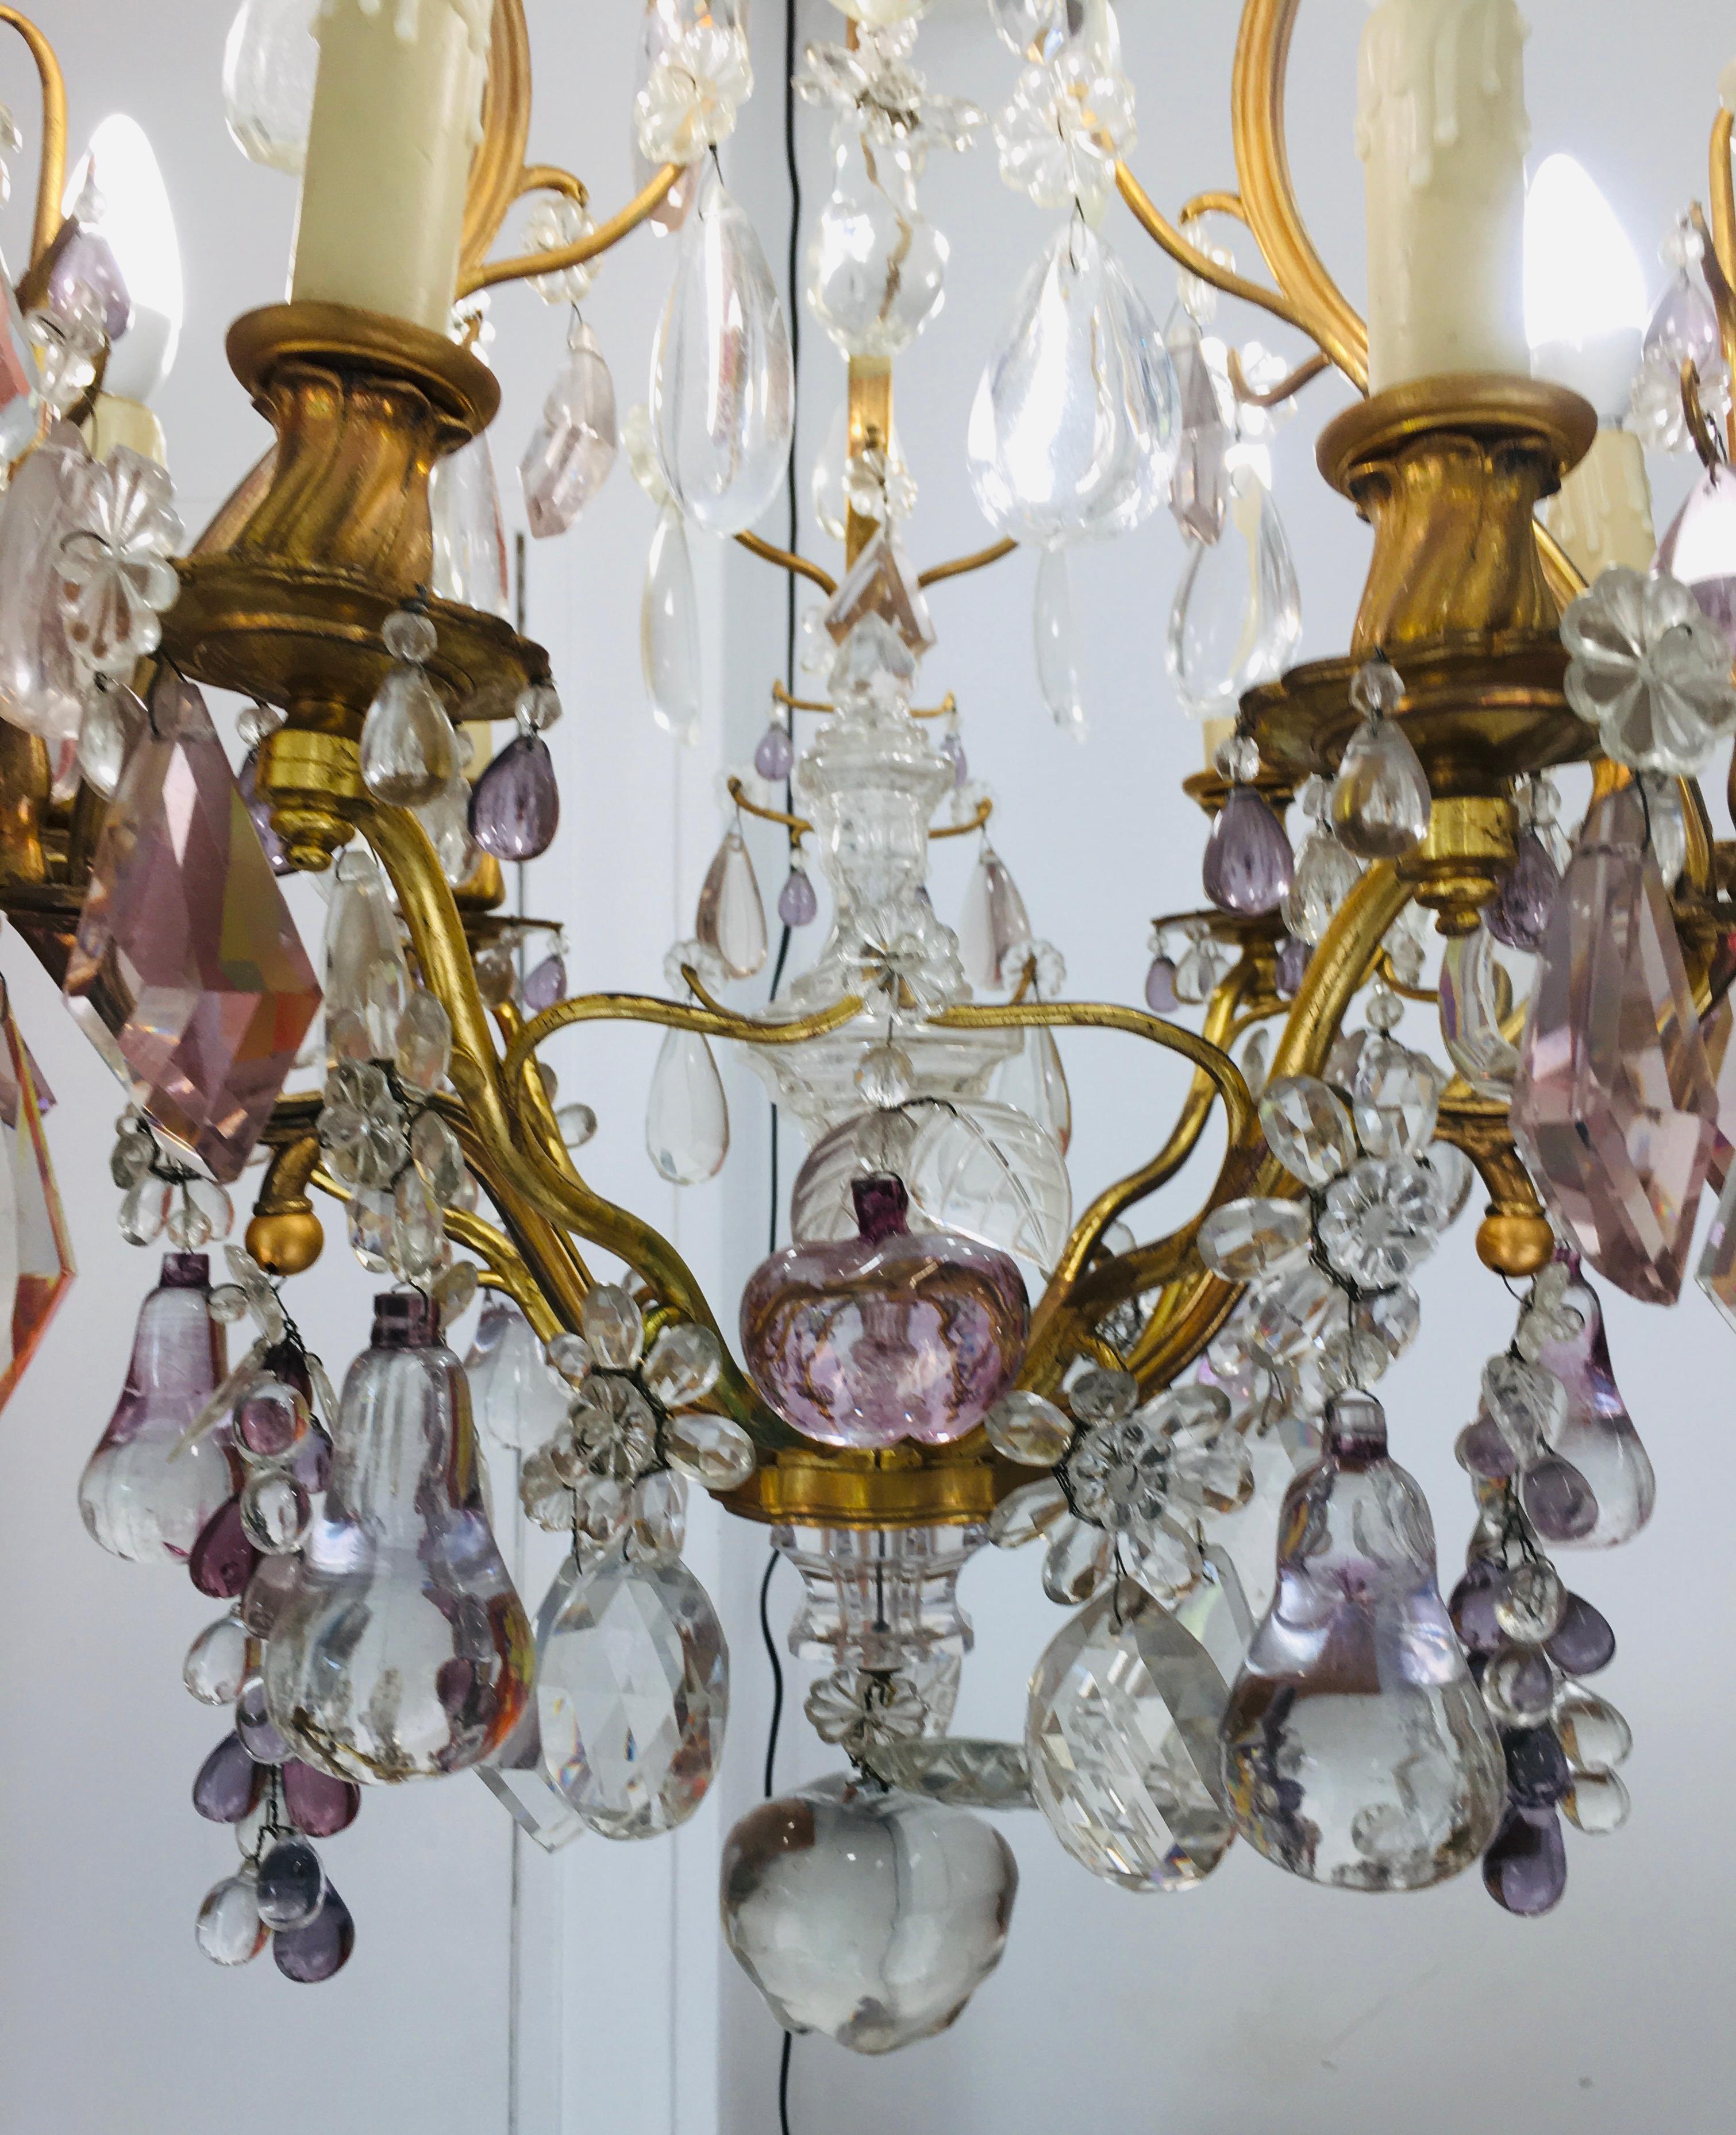 sehr einzigartiger und eleganter französischer Maison Bagues Kronleuchter aus Bronze und Glas.
Glas Früchte, Blumen und geometrische Kristalle auf einem vergoldeten Bronzerahmen.
Sechs Lichter, die ein düsteres Licht verbreiten.
Großes Design,